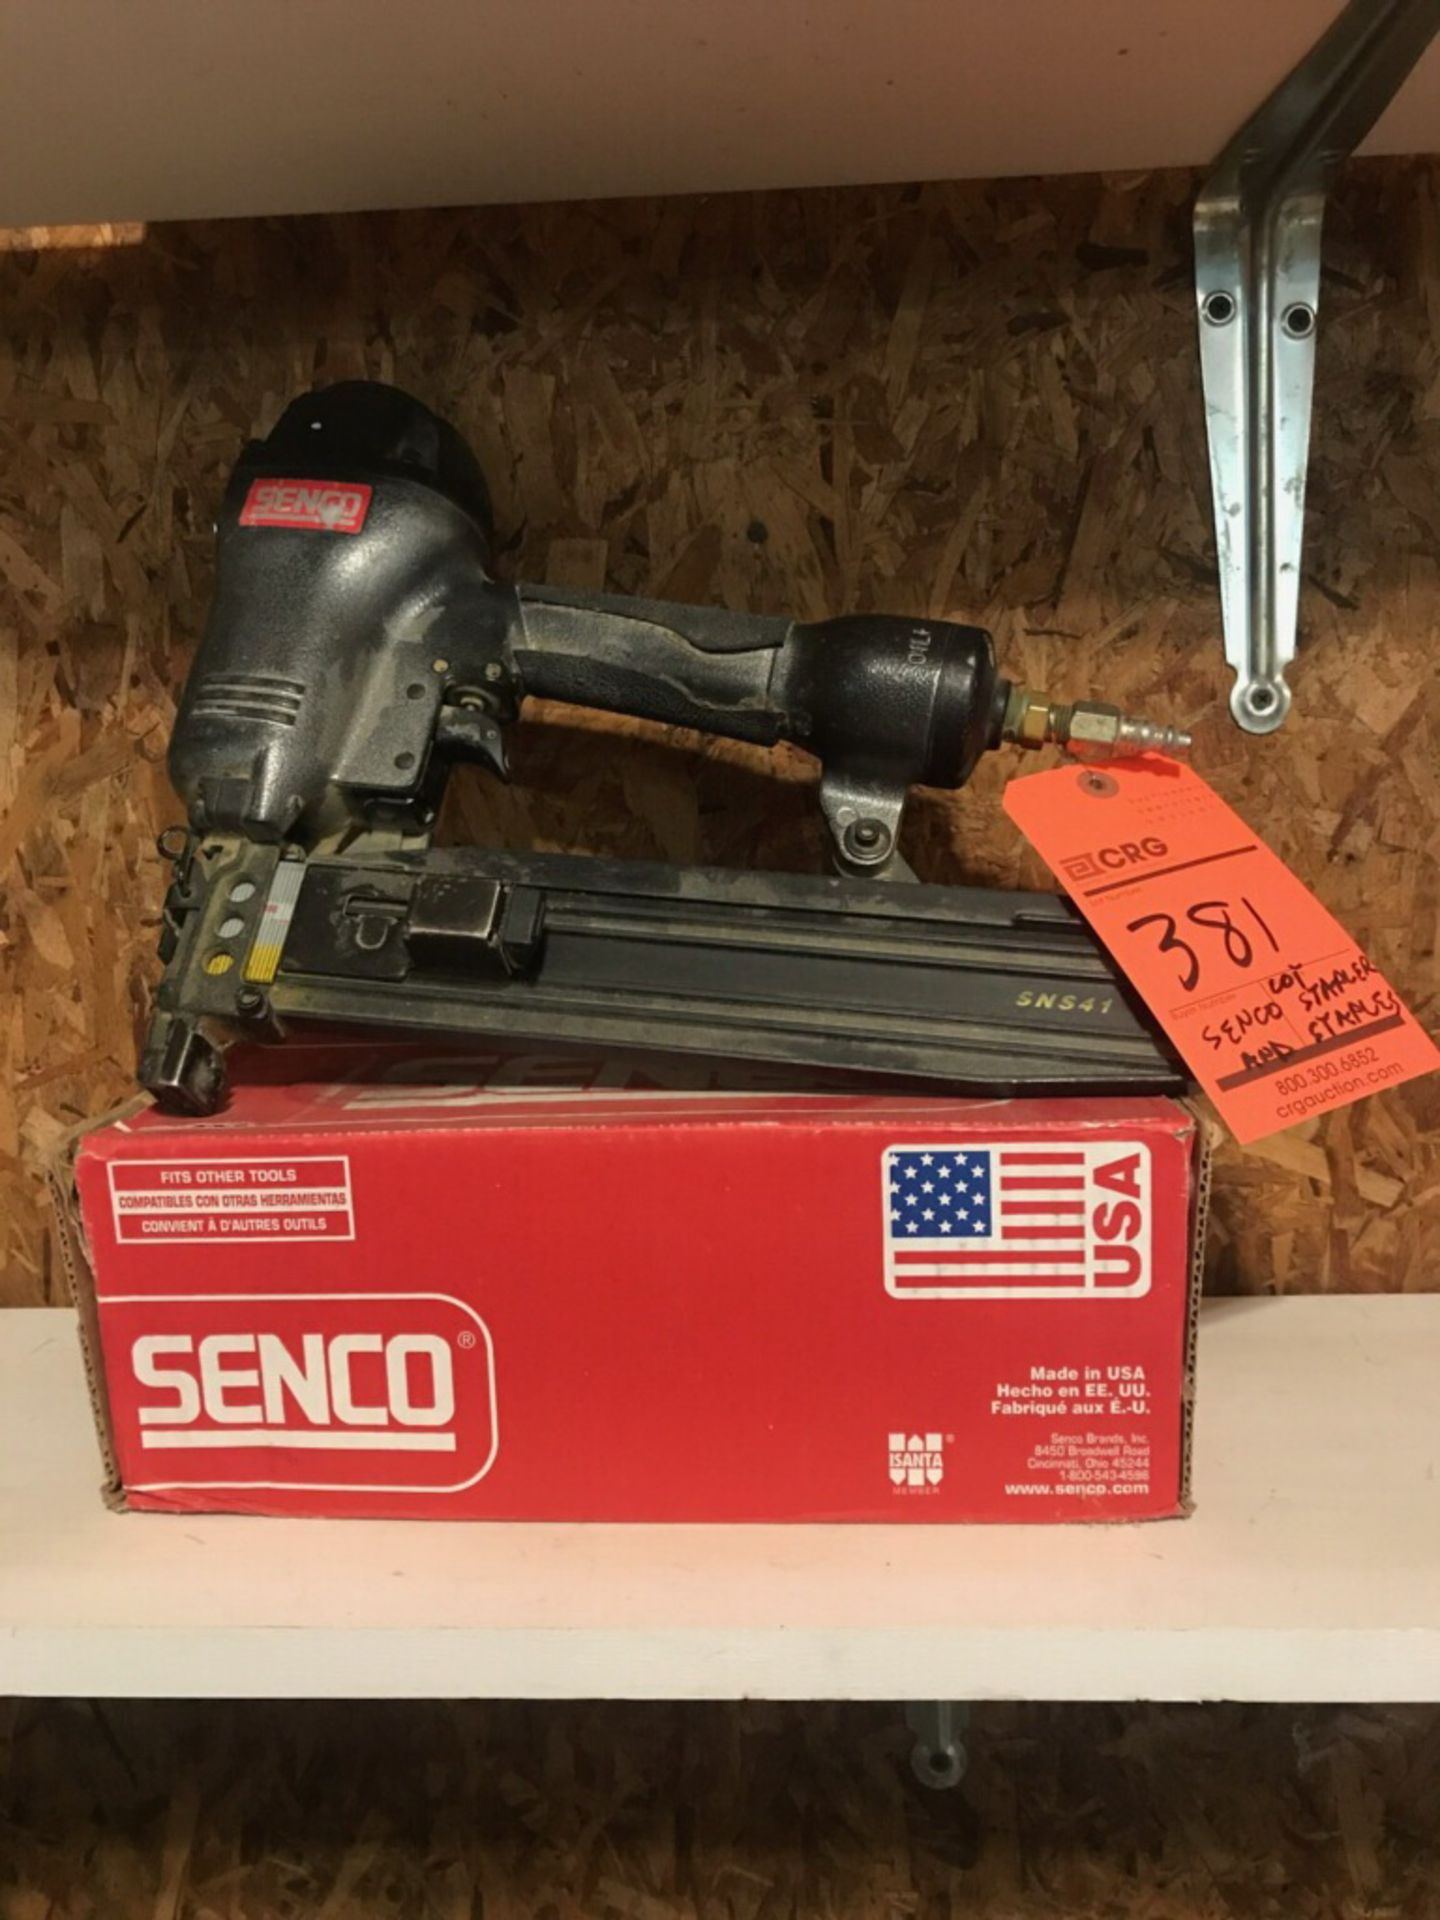 Senco SNS41 pneumatic nailer, with box of nails.